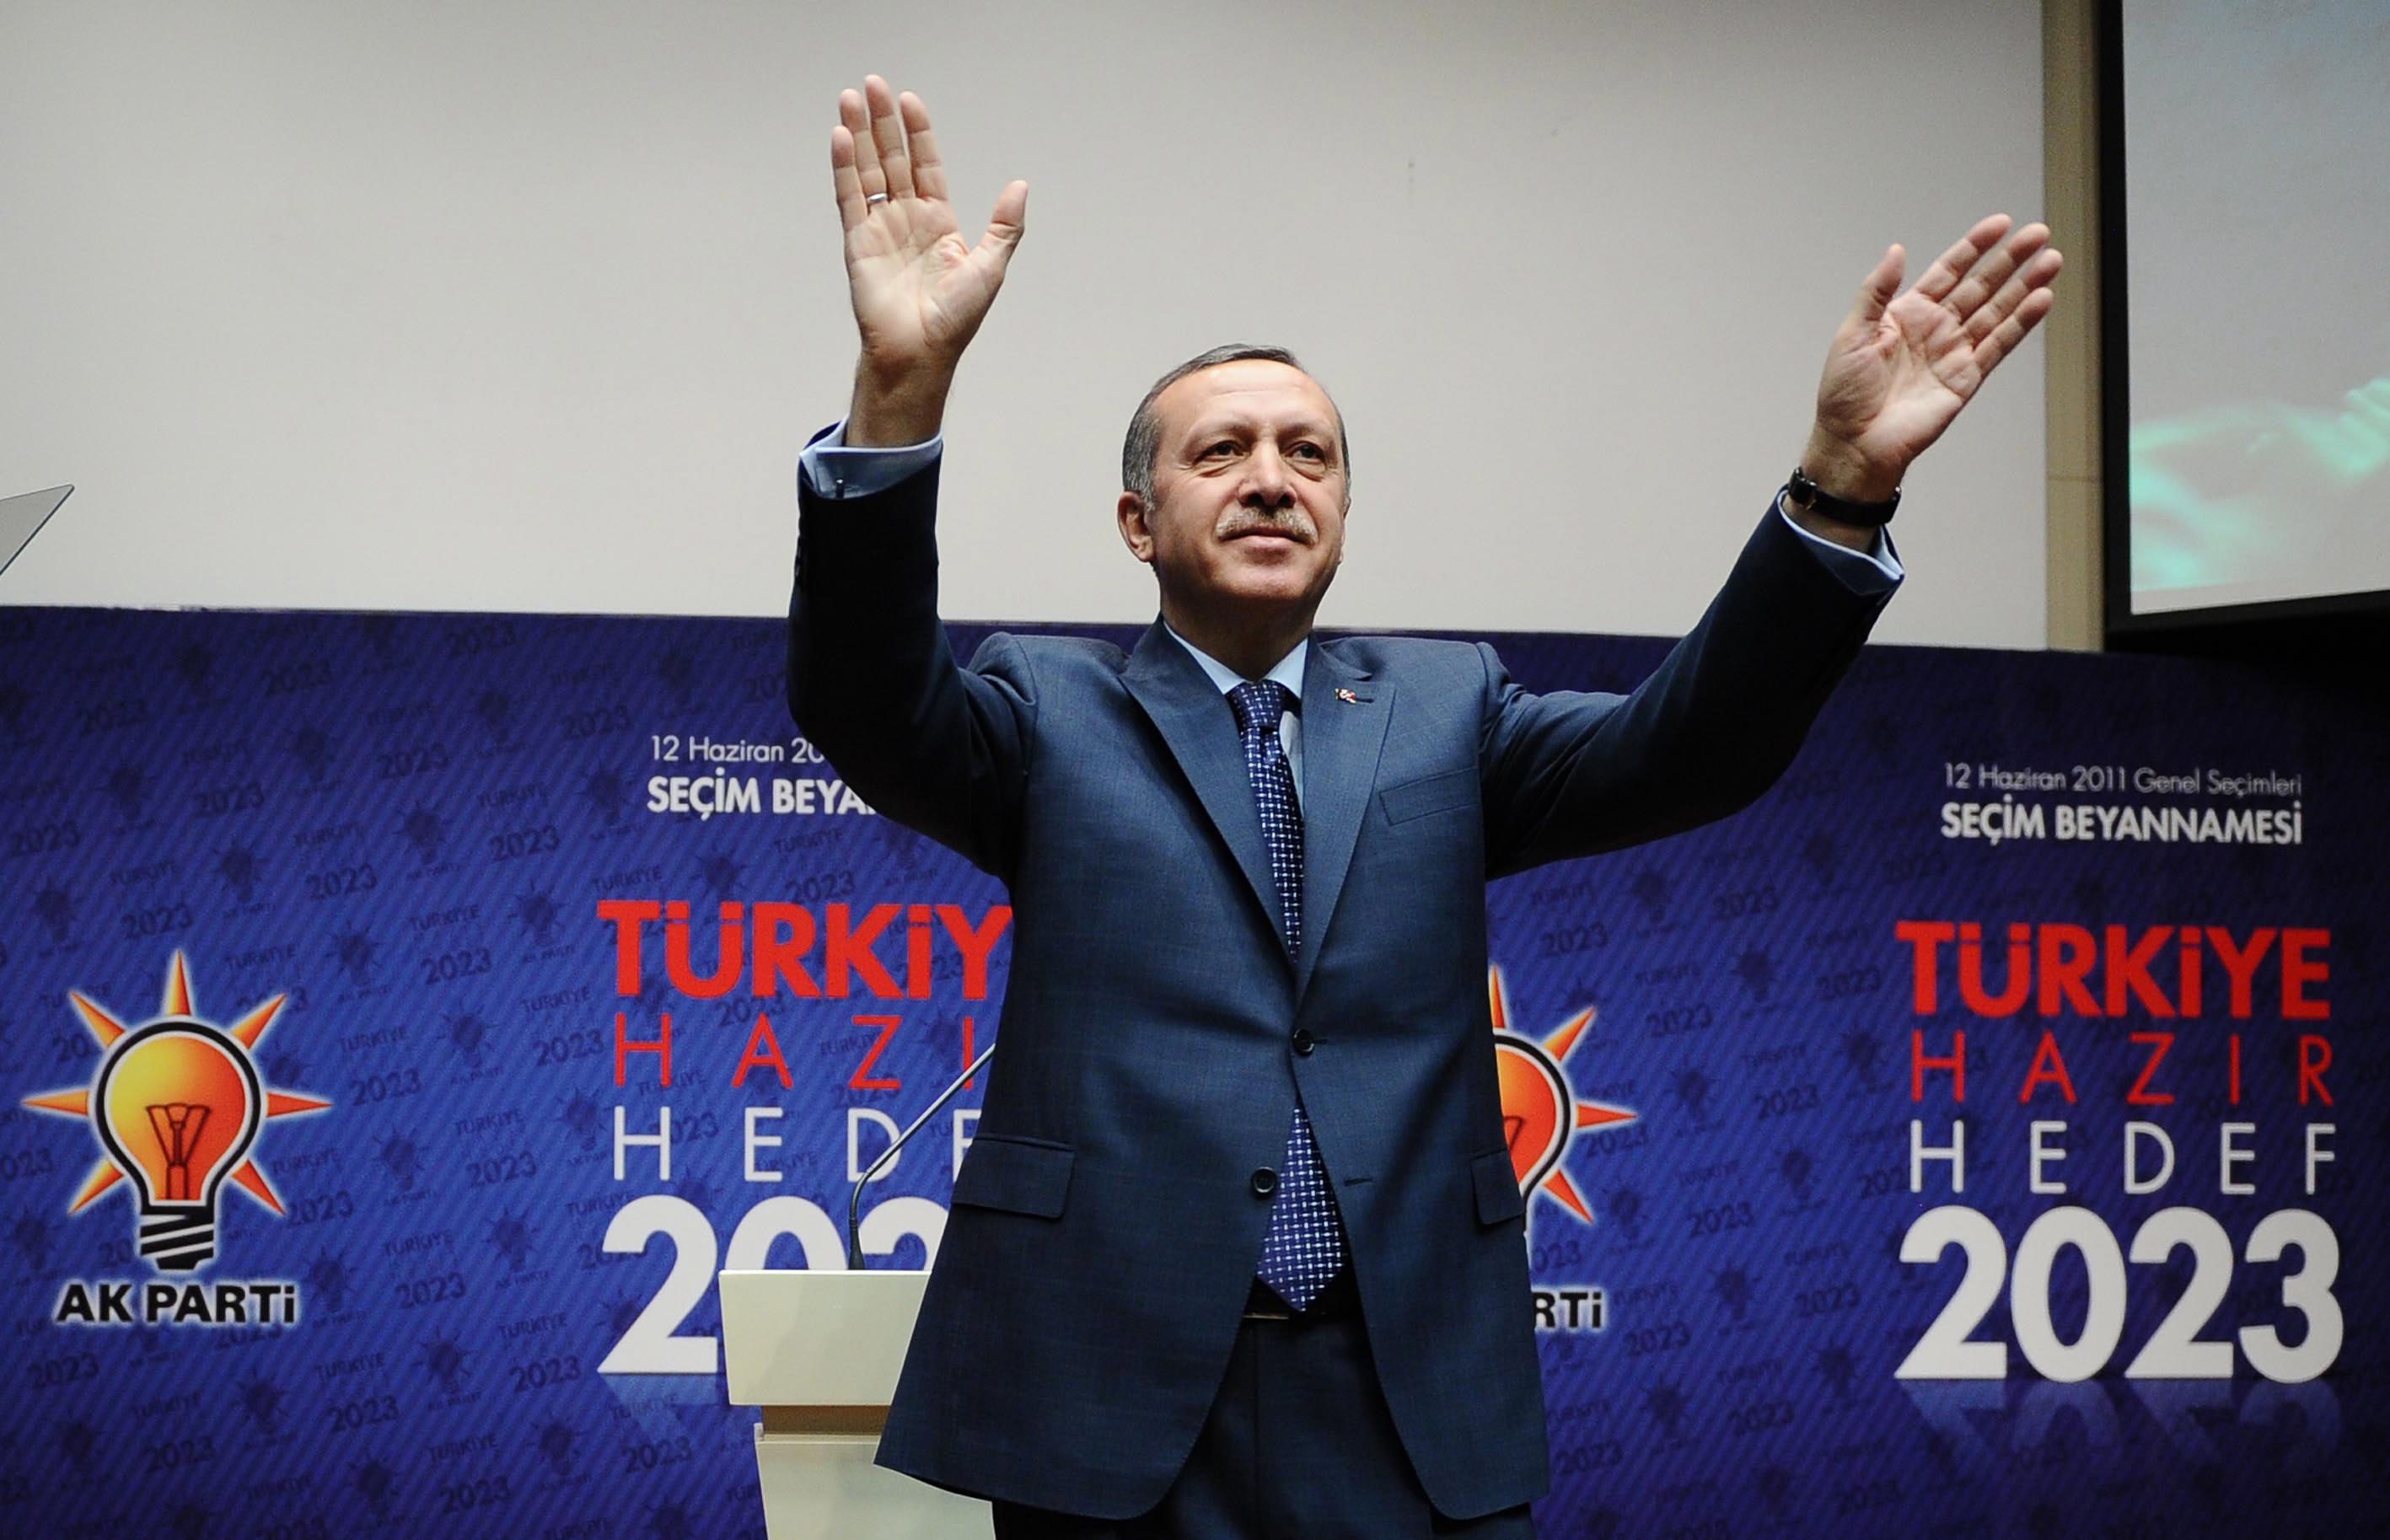 Ο Ερντογάν θέλει να κάνει την Τουρκία υπερδύναμη